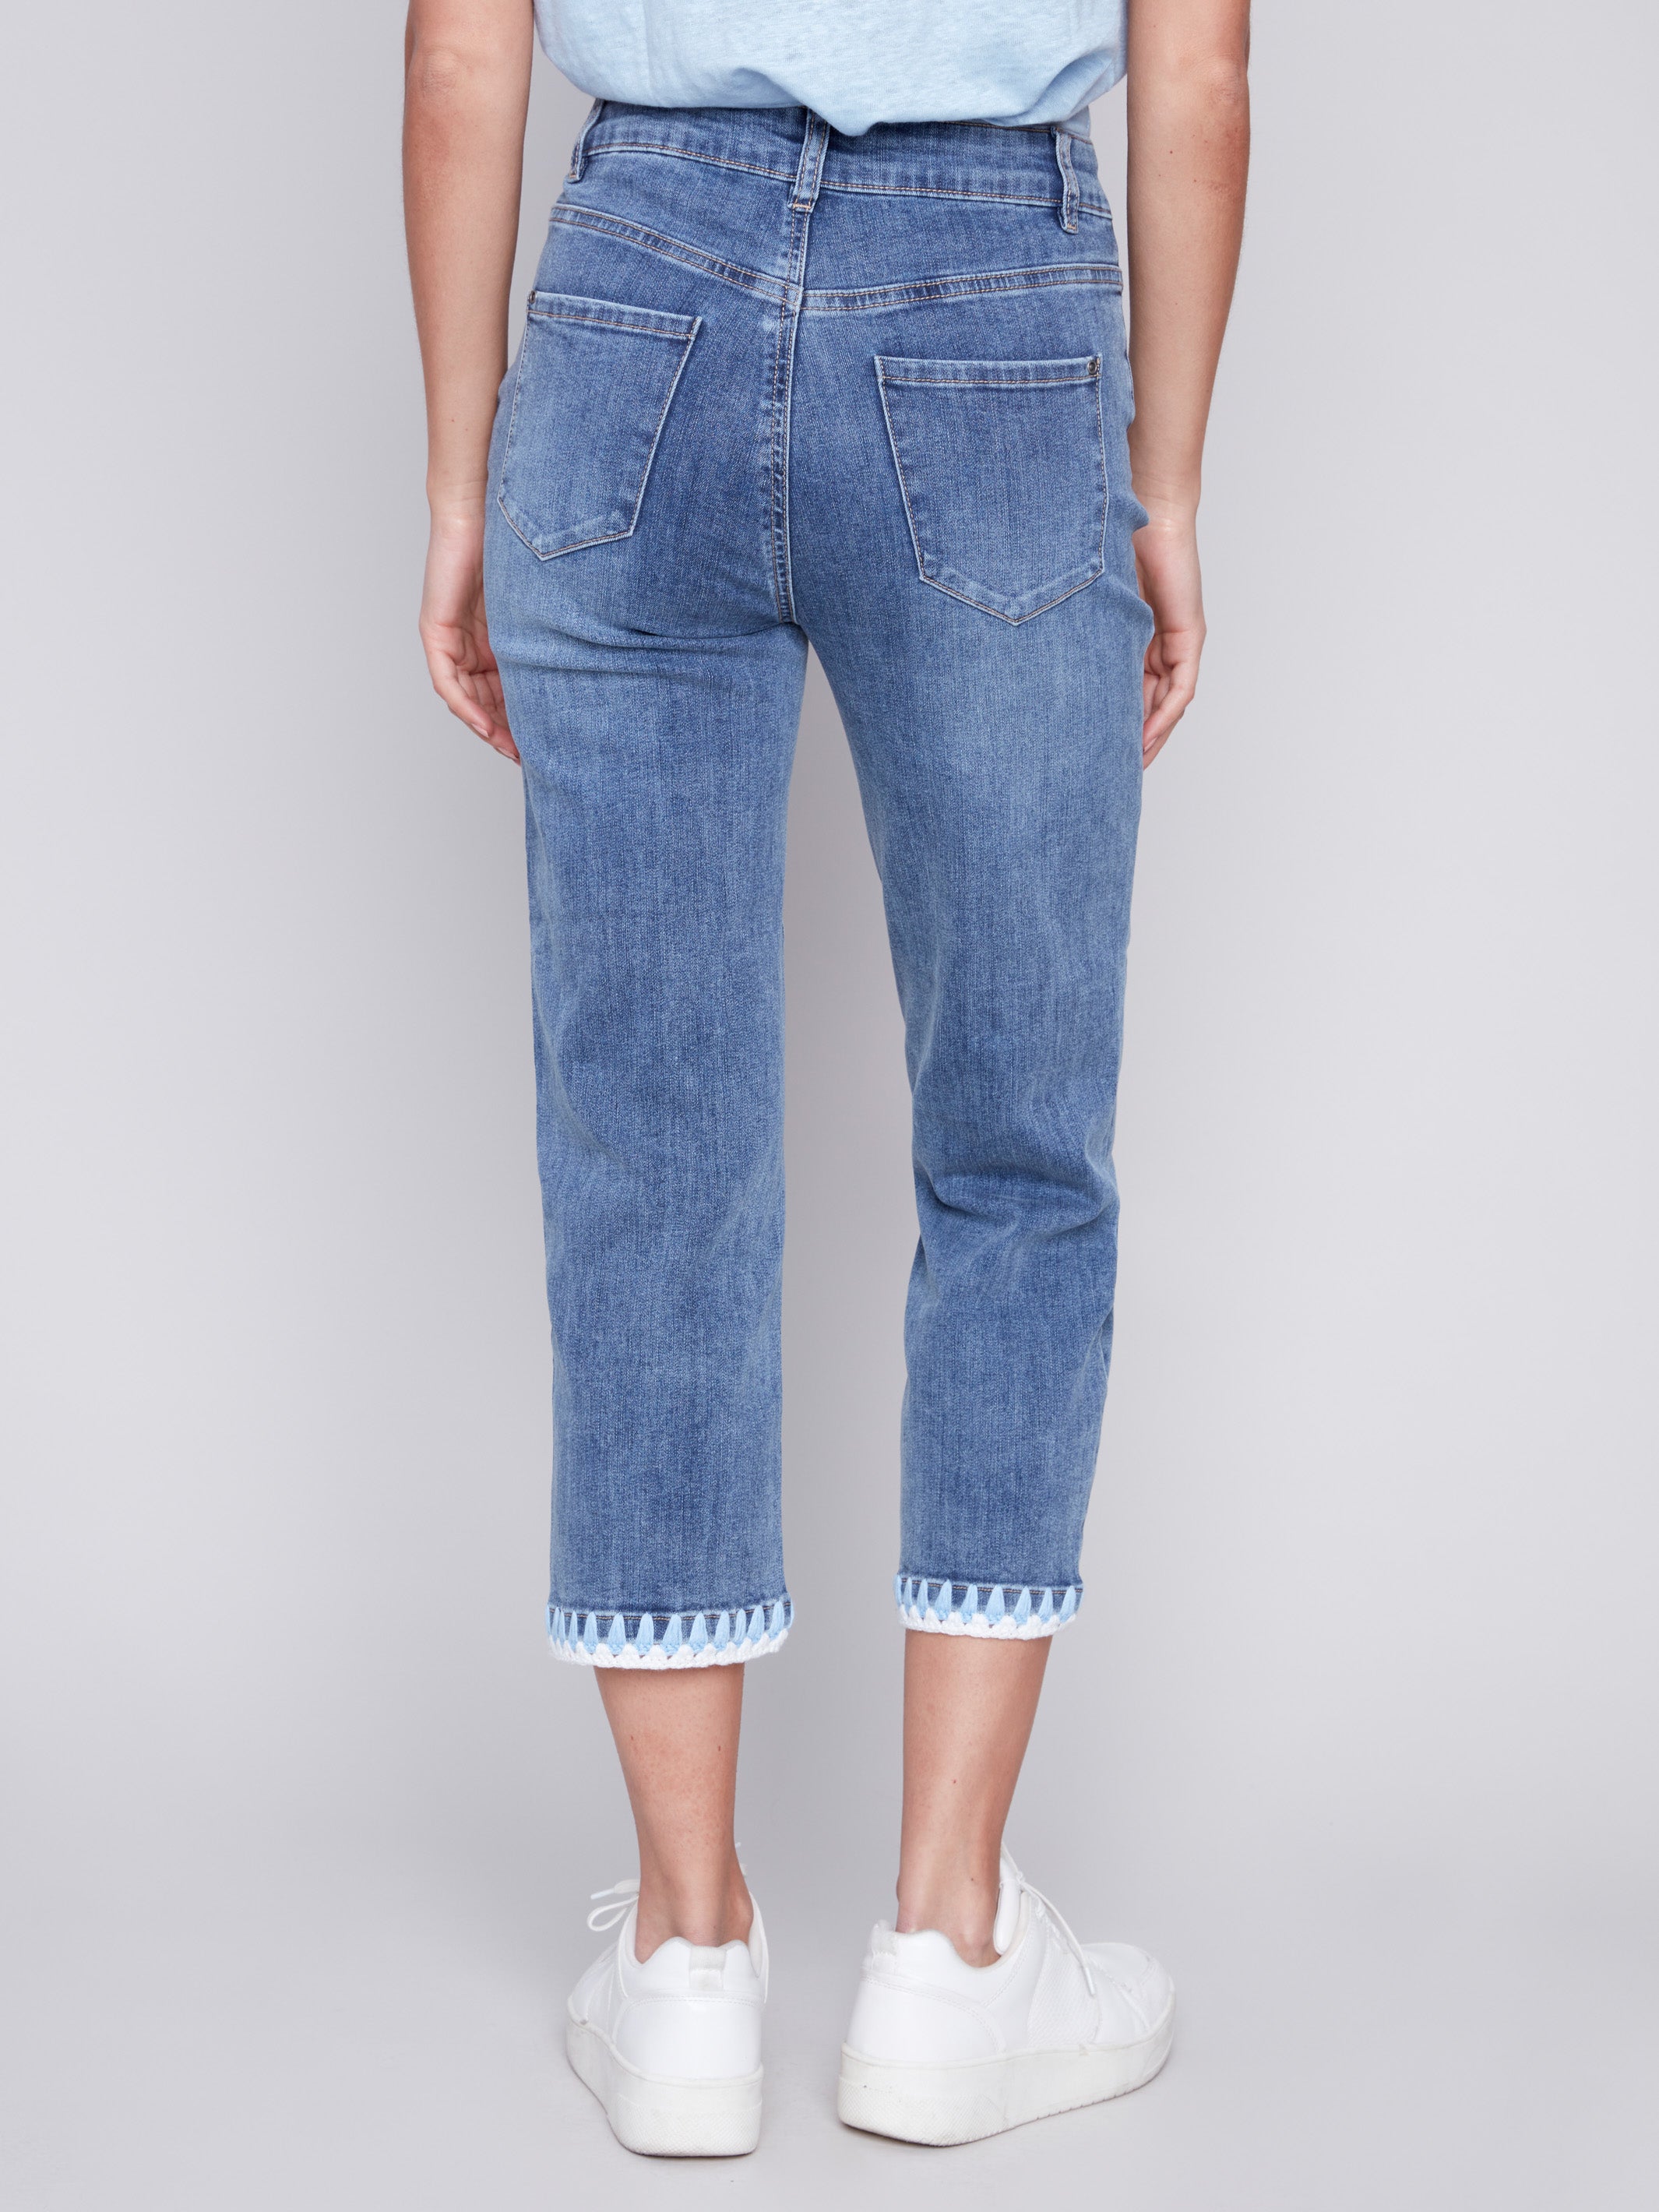 Women's Jeans, Fashionable Denim Pants